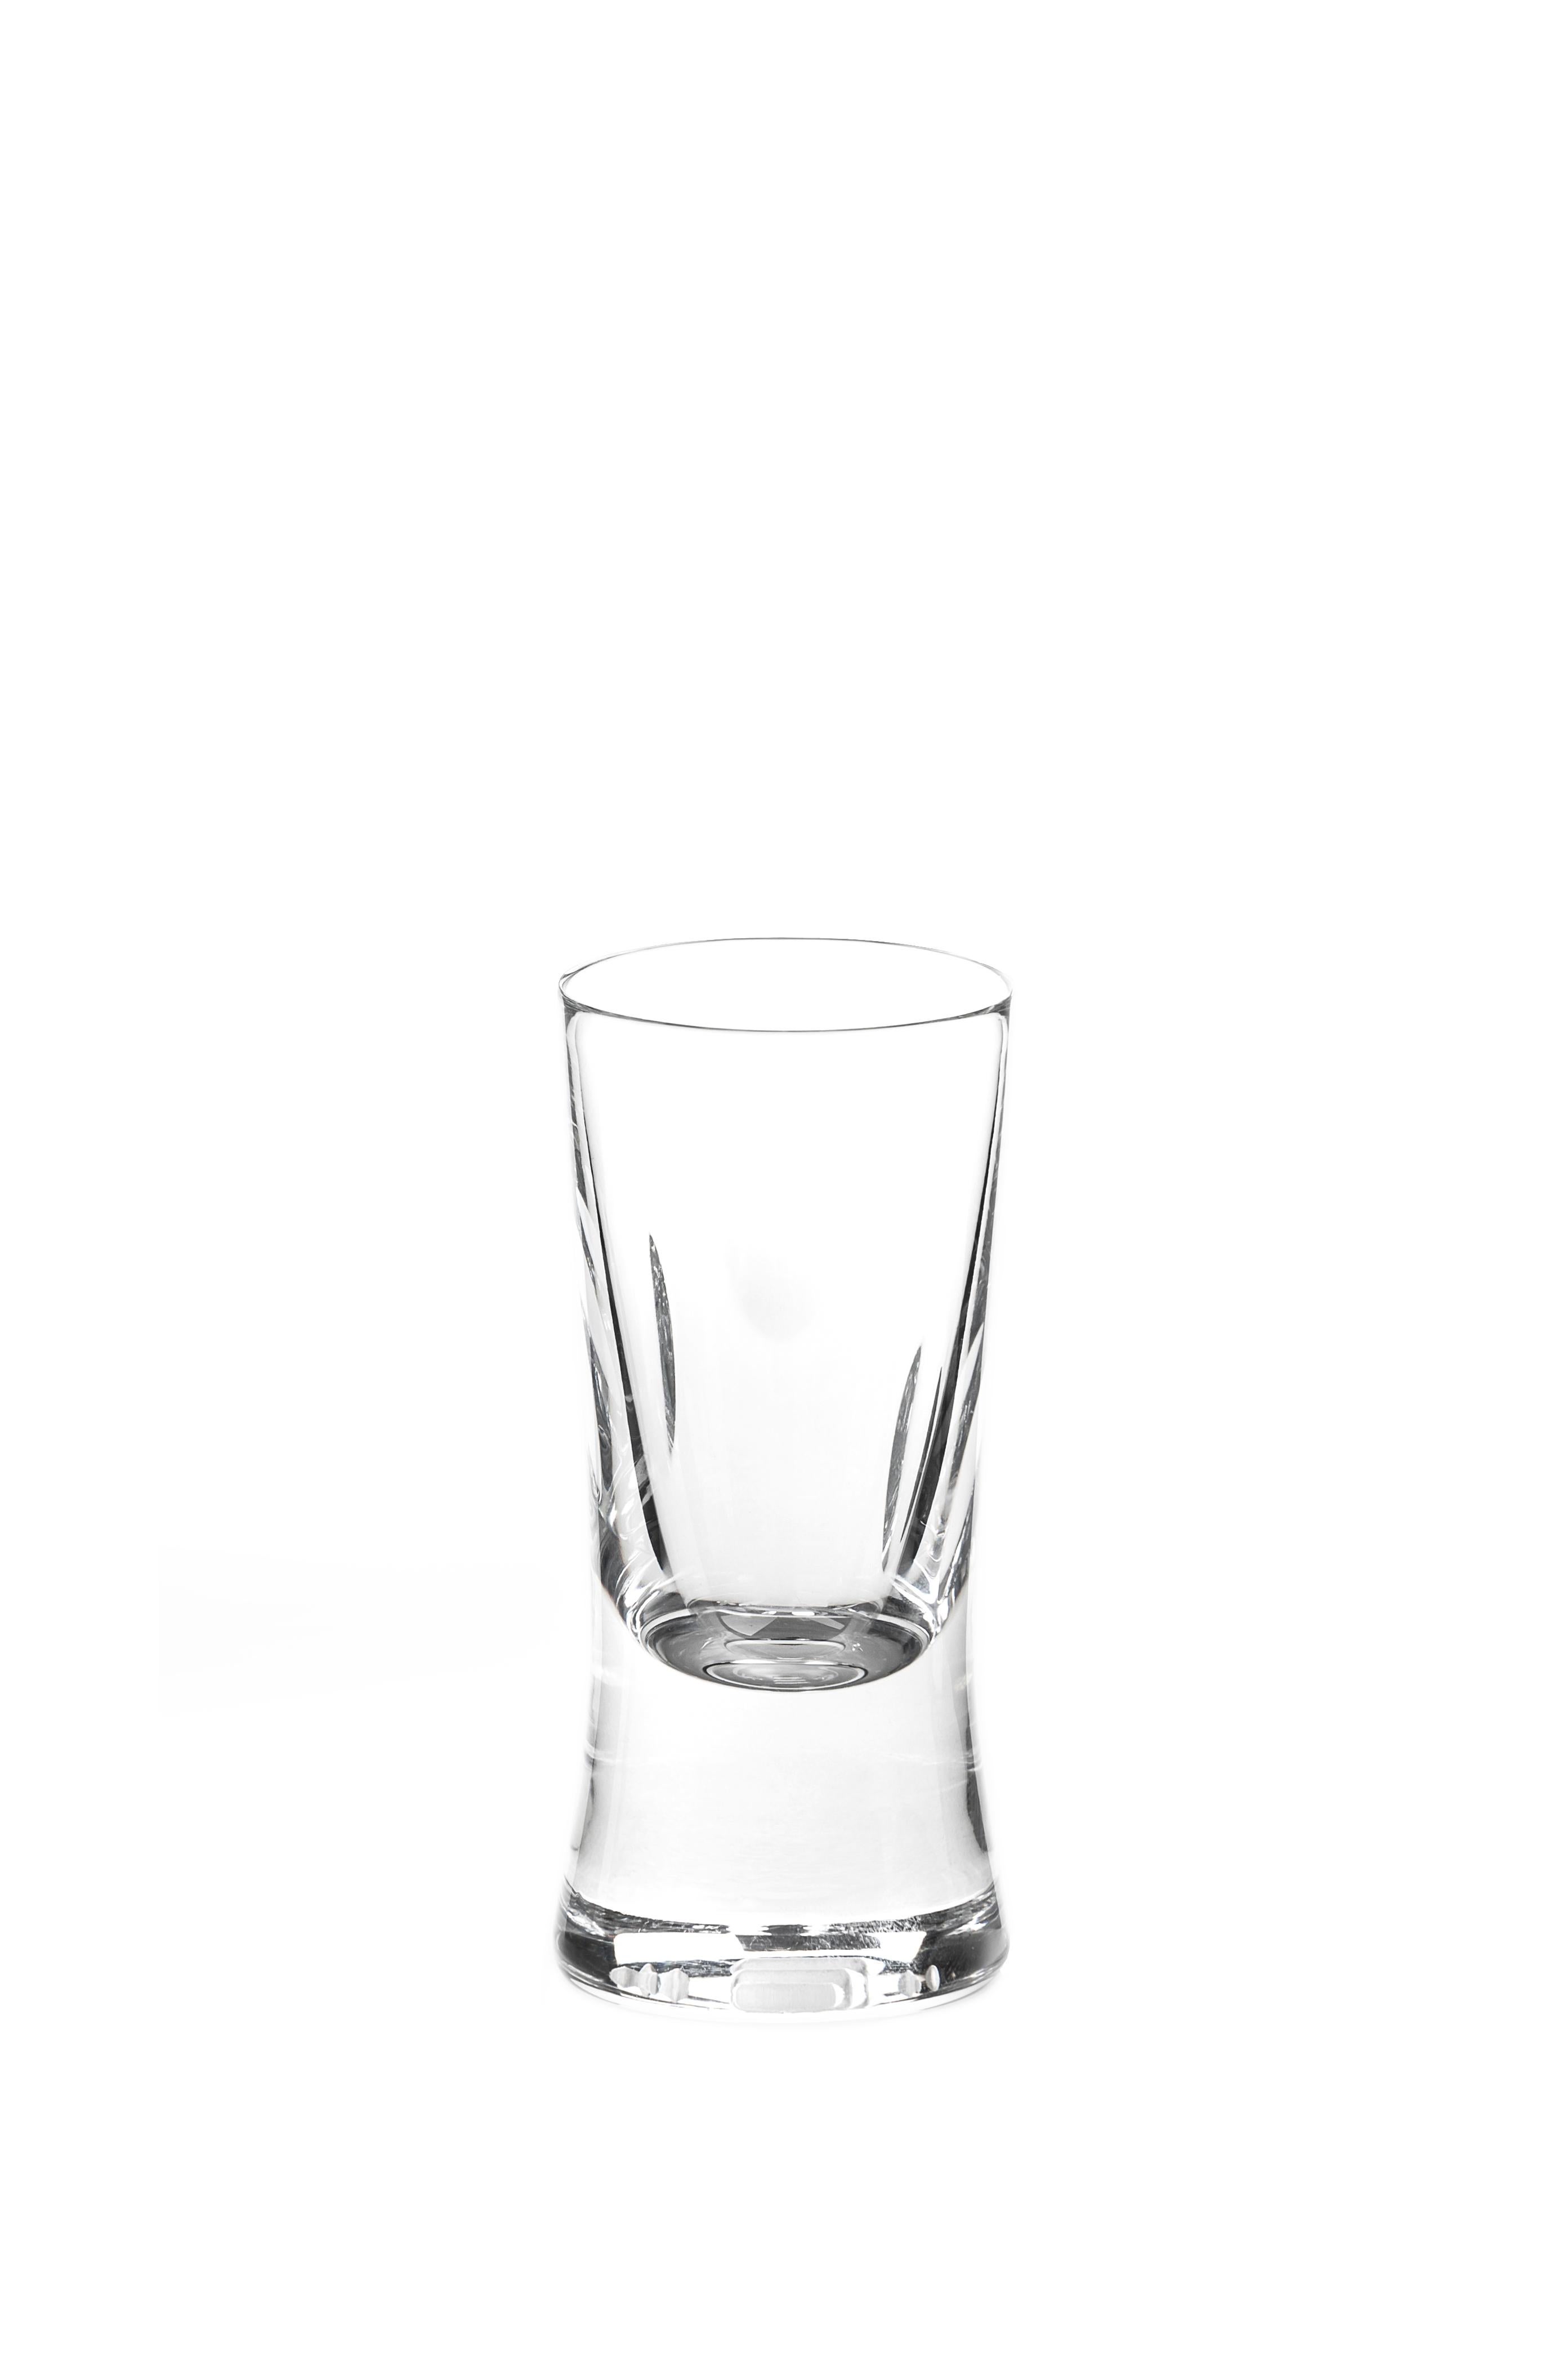 Ein handgefertigtes Schnapsglas
Entworfen von Martino Gamper für J. HILL's Standard als Teil unserer 'CUTTINGS' Collection.

Stecklinge

Die taktilen Kristallformen fühlen sich in der Hand zerklüftet und primitiv an; die Finger suchen ganz